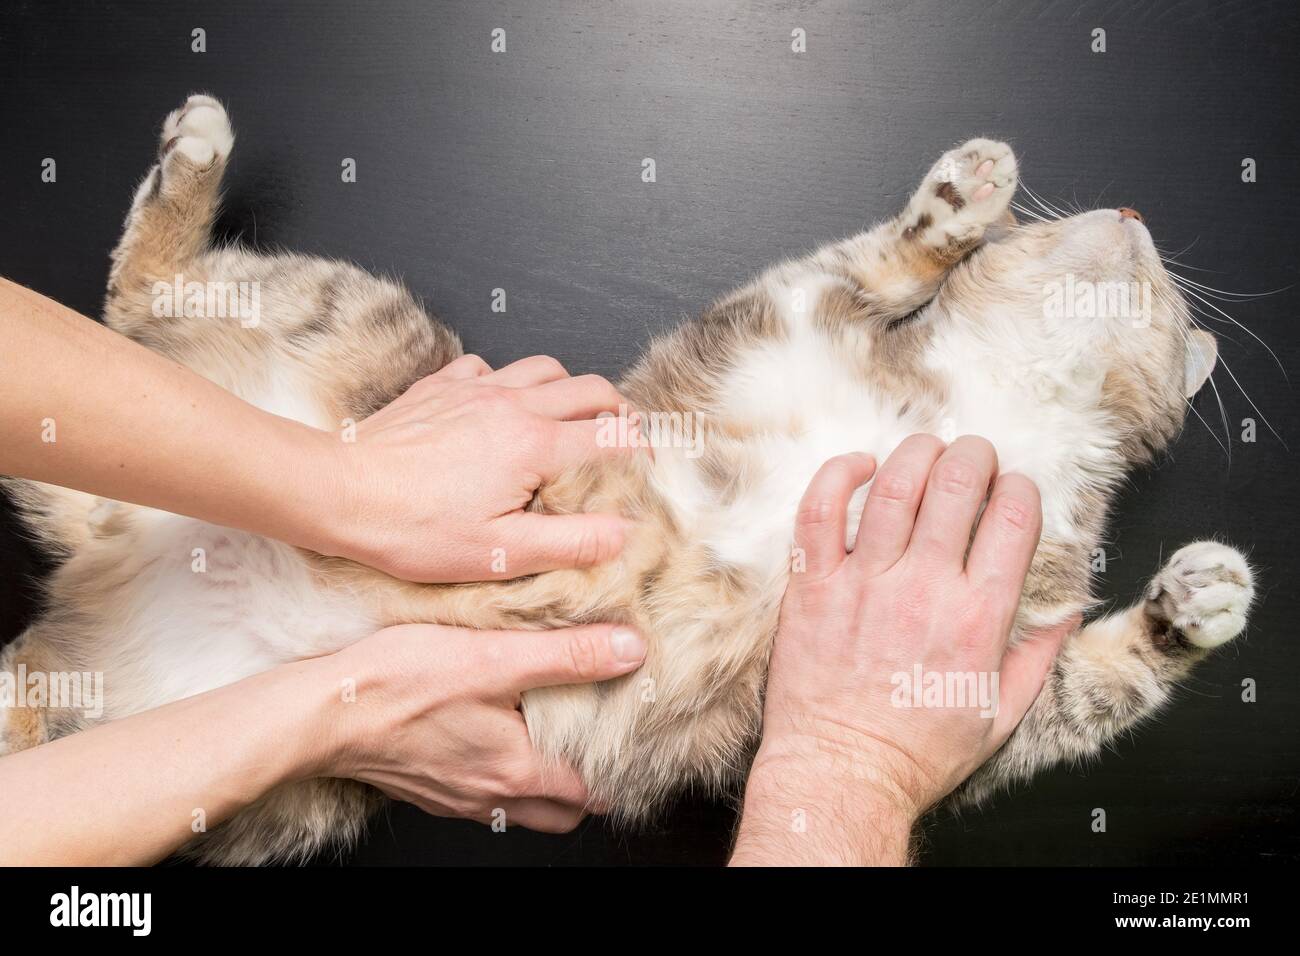 Tre mani abbracciano e carezzano il gatto, che giace soddisfatto e rilassato sul tavolo nero. Foto Stock